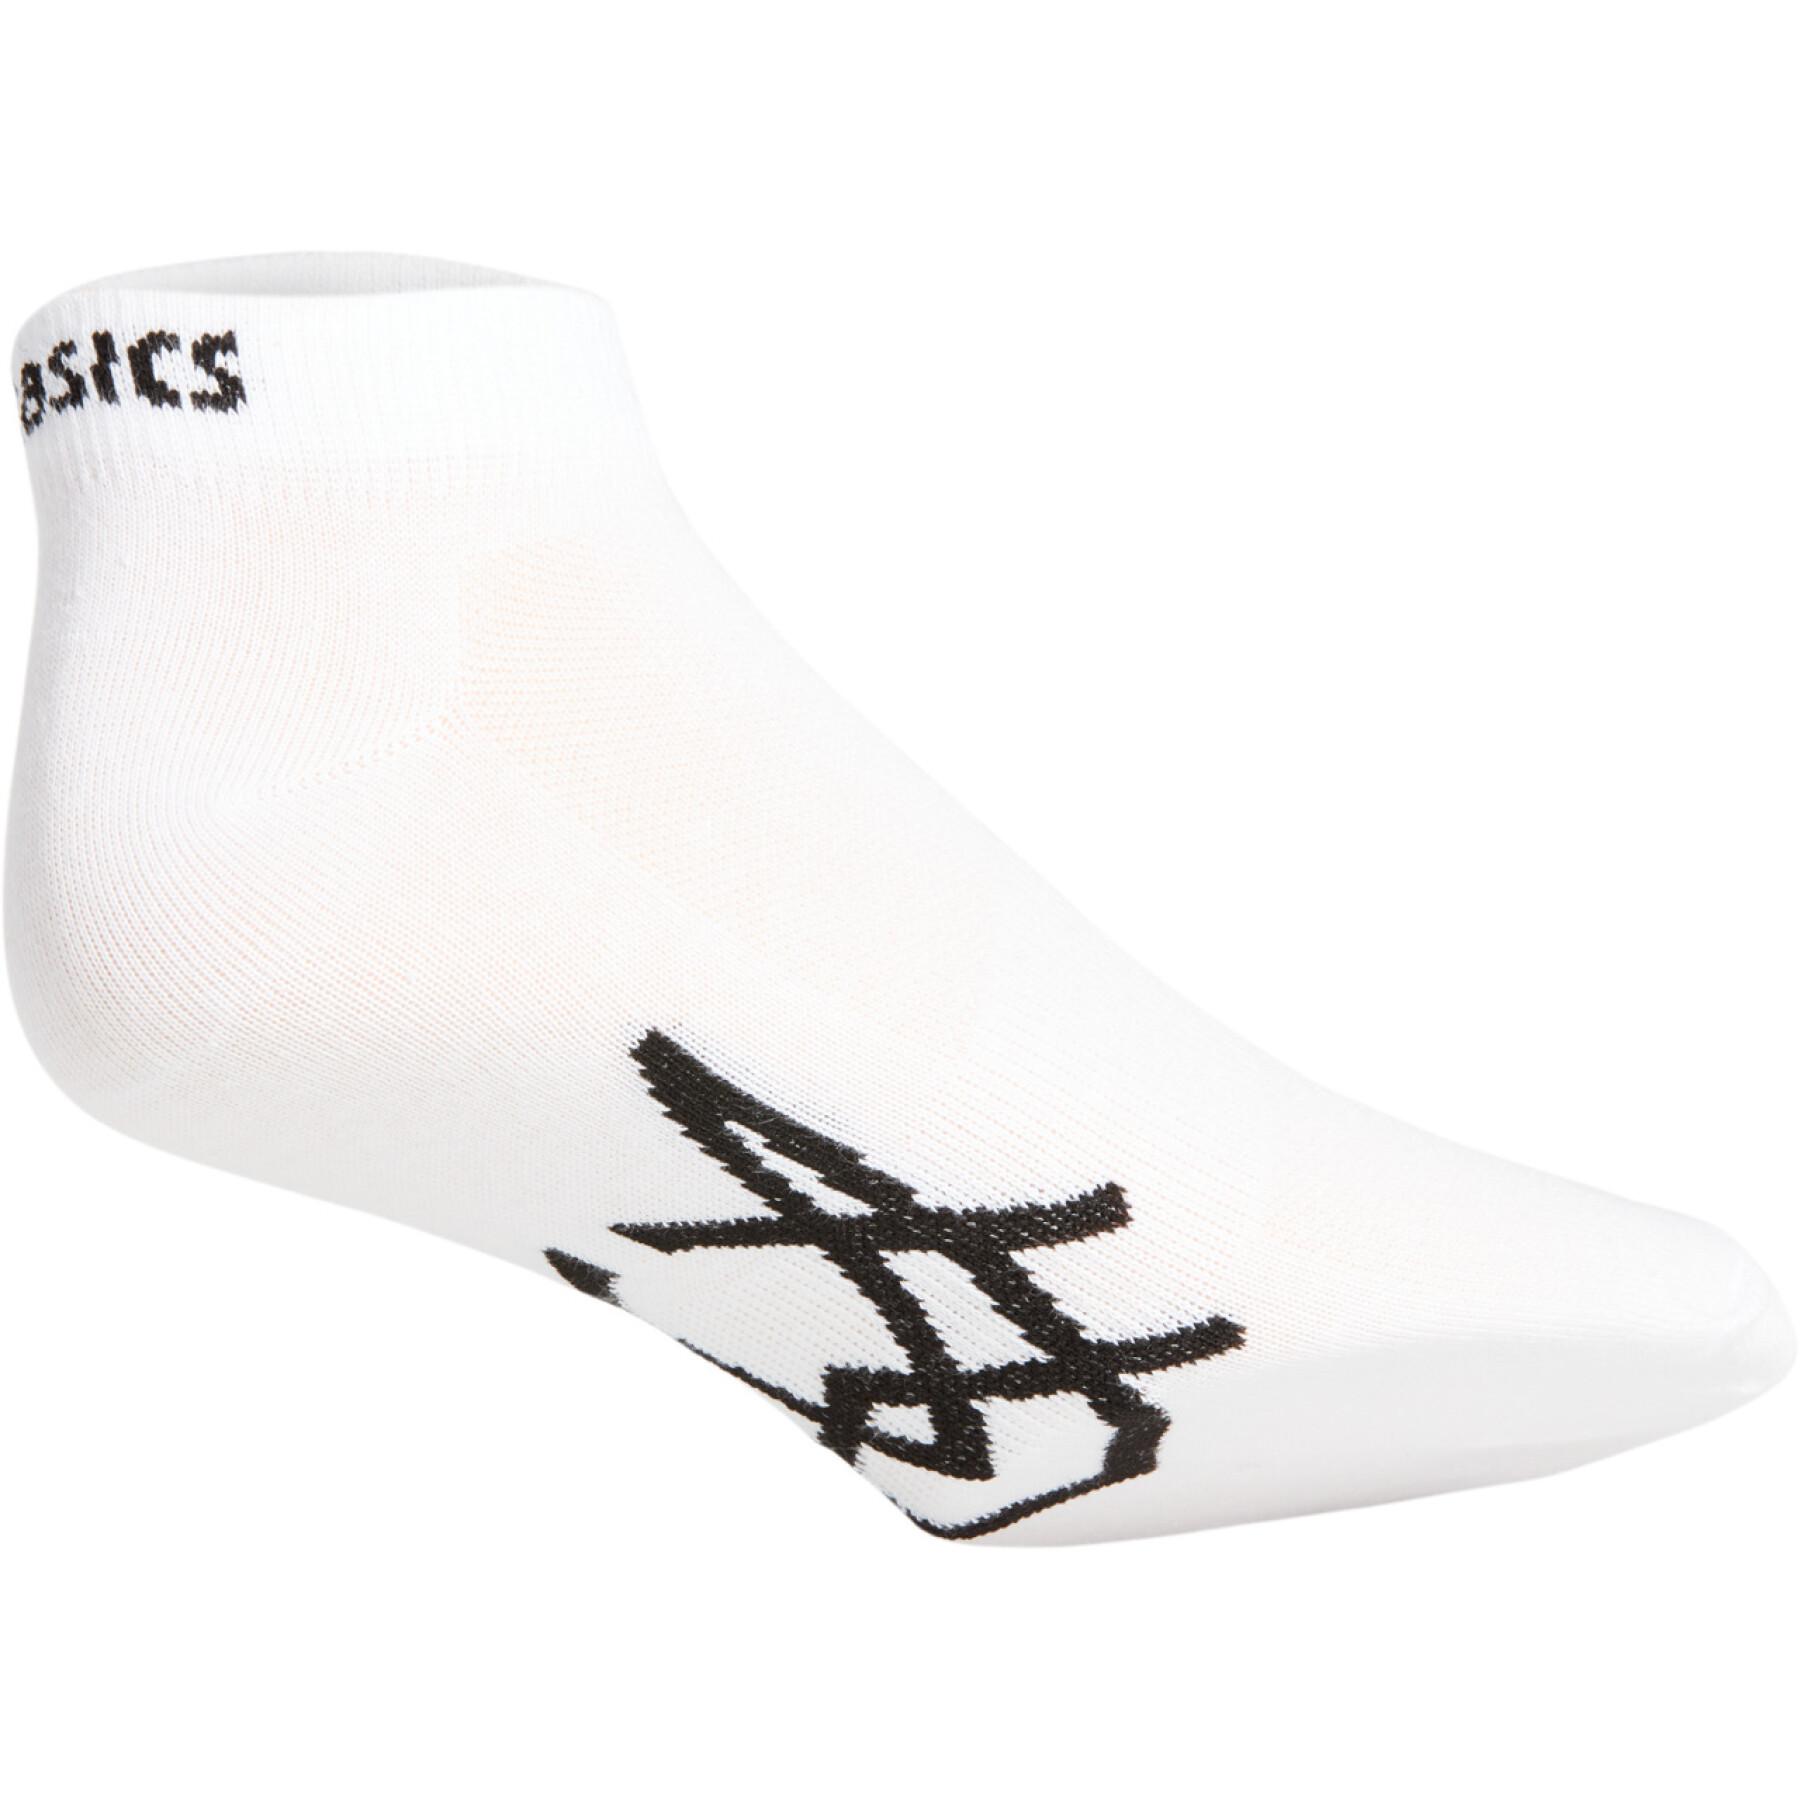 Socks Asics Sport Ped (3 paires)